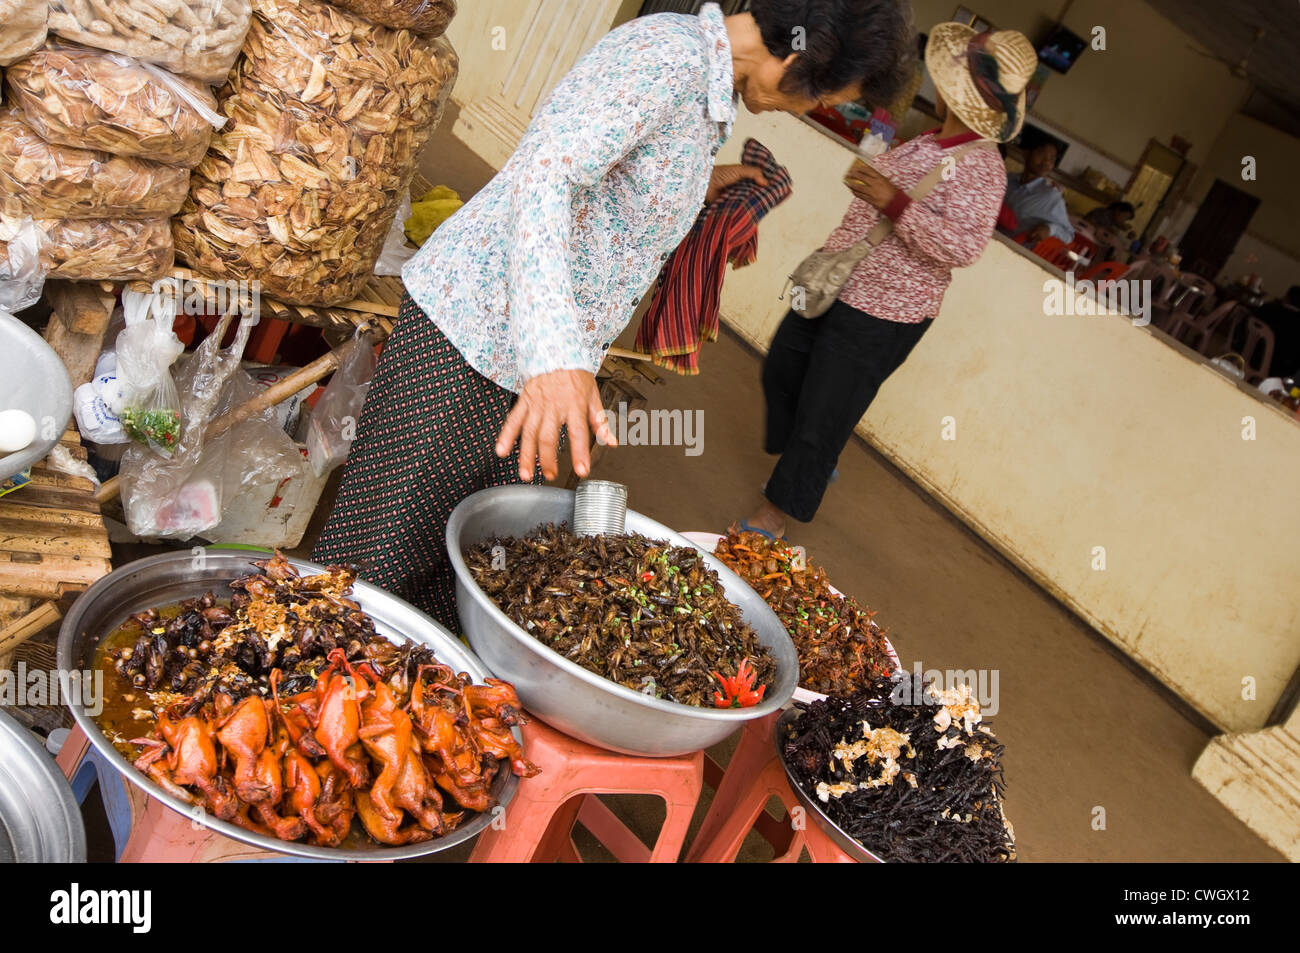 Grand angle de visualisation horizontal typique d'un marché en bordure de la vente d'insectes frits étrange et son ensemble de petits oiseaux au Cambodge Banque D'Images